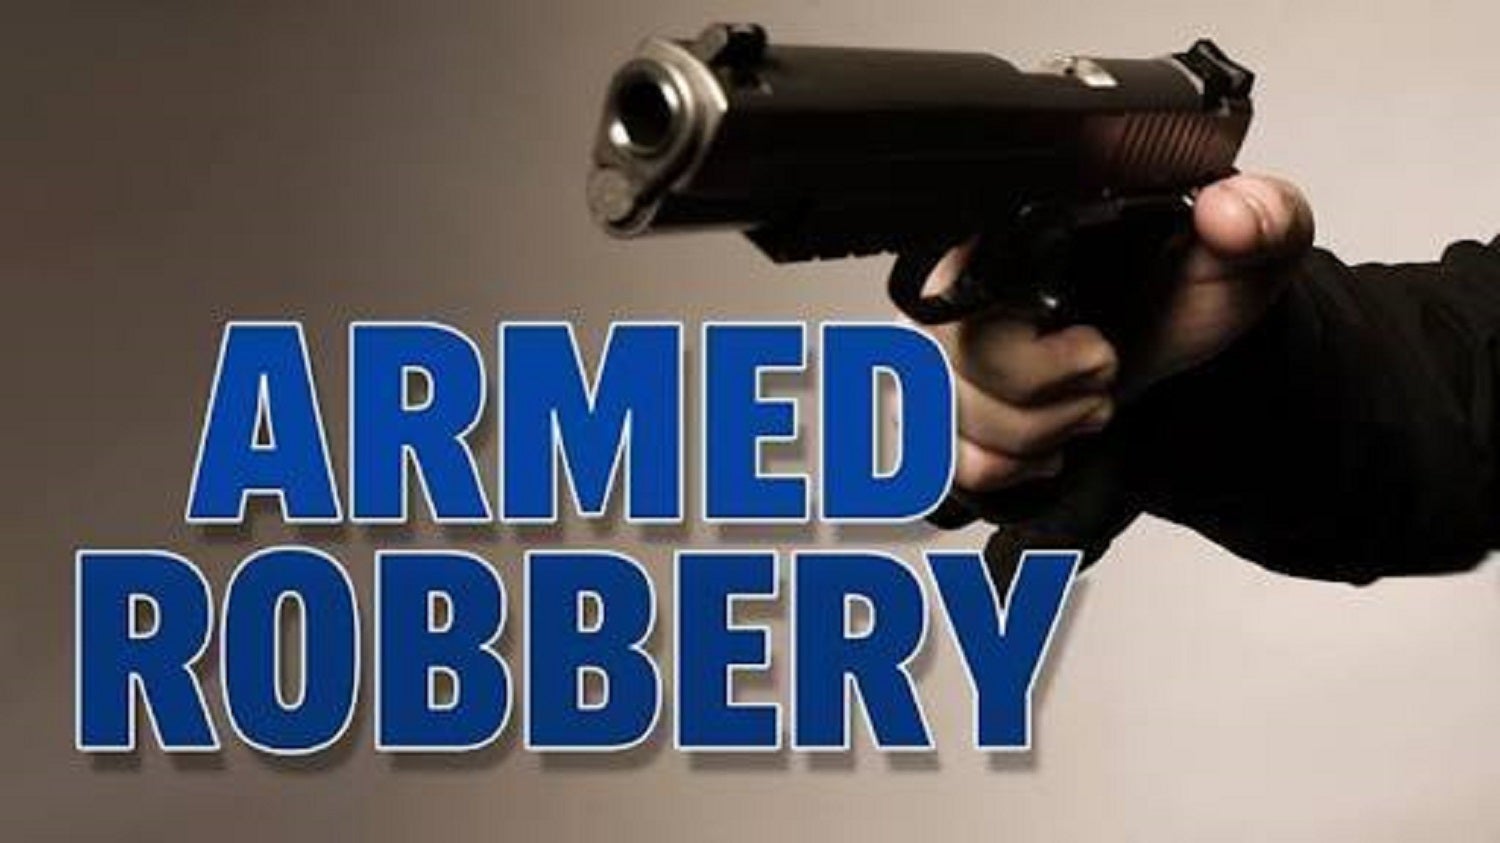 लोहरदगा में बंदूक़ की नोक पर आर्मी जवान के घर से 1.5 लाख रुपए नकद और 5 लाख के जेवरात लूट लिए